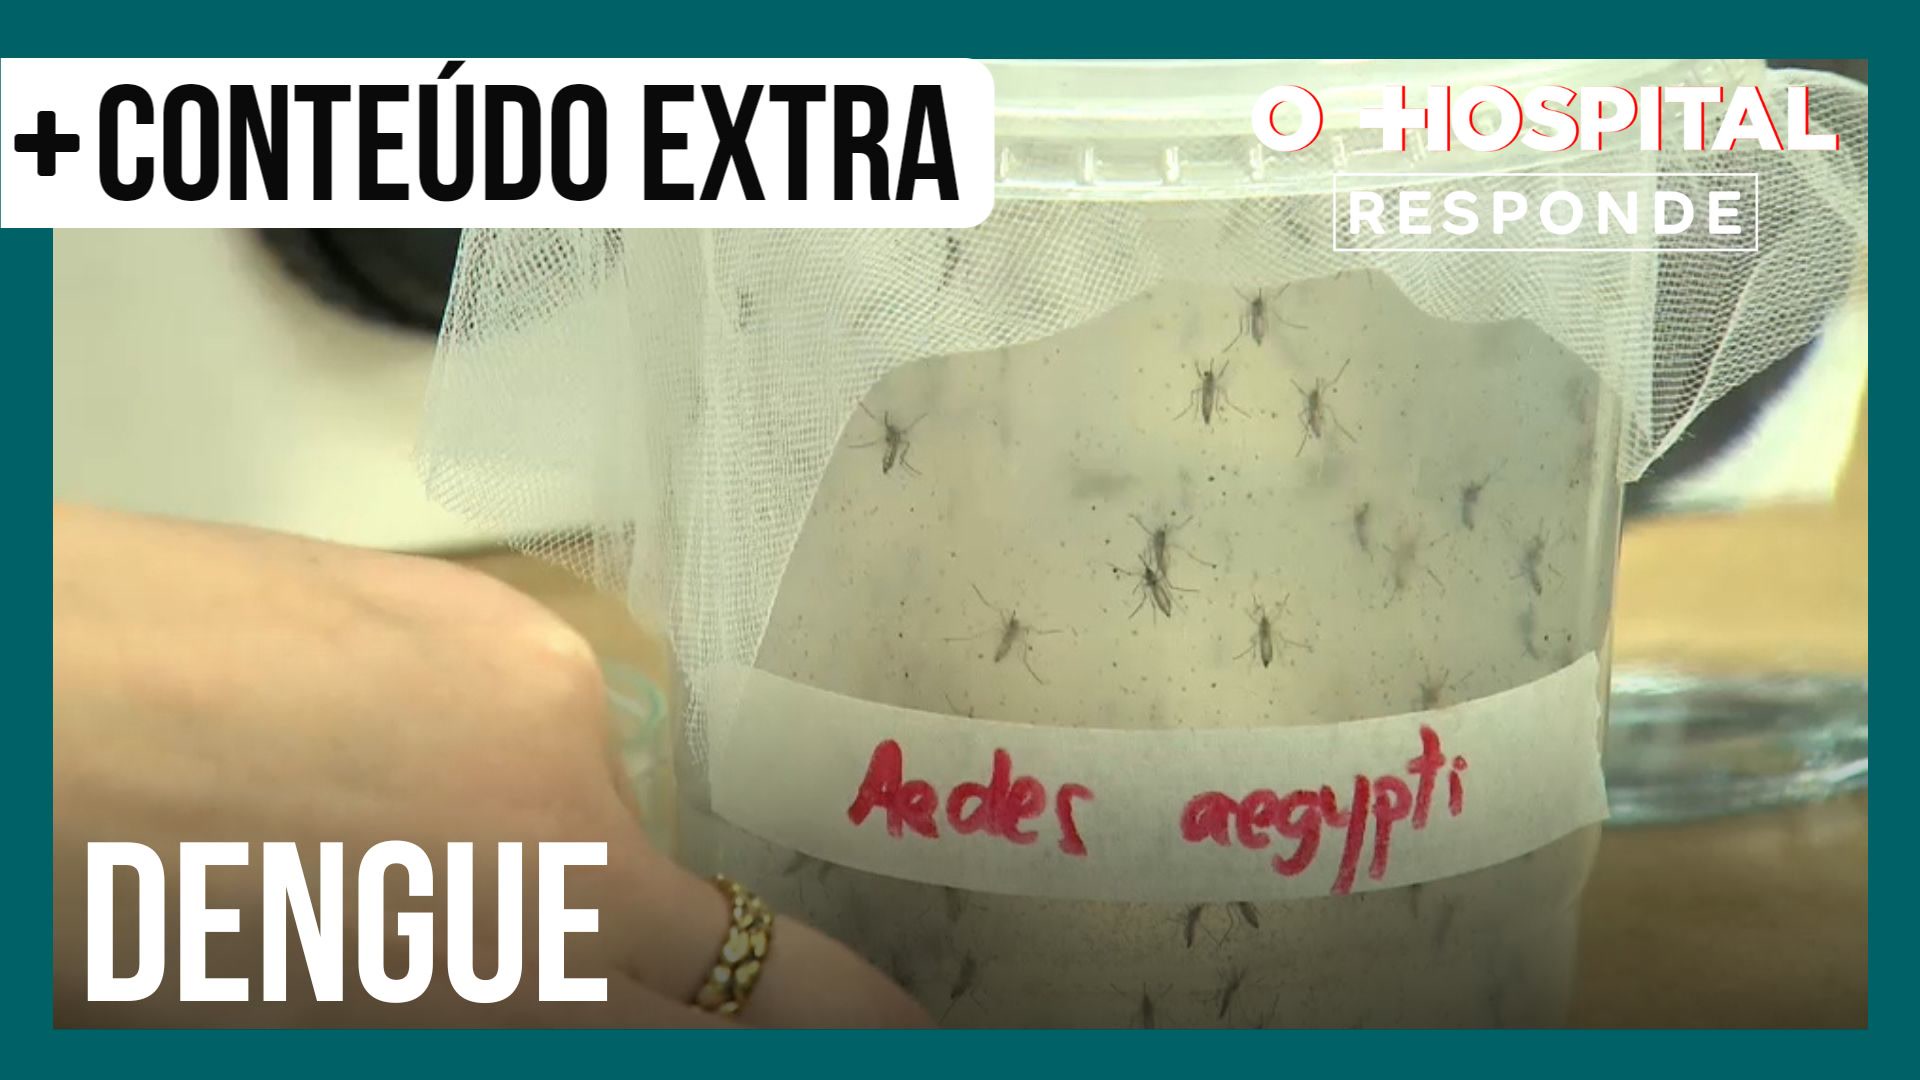 Vídeo: Infectologista explica a diferença entre a dengue clássica e a hemorrágica | O Hospital Responde